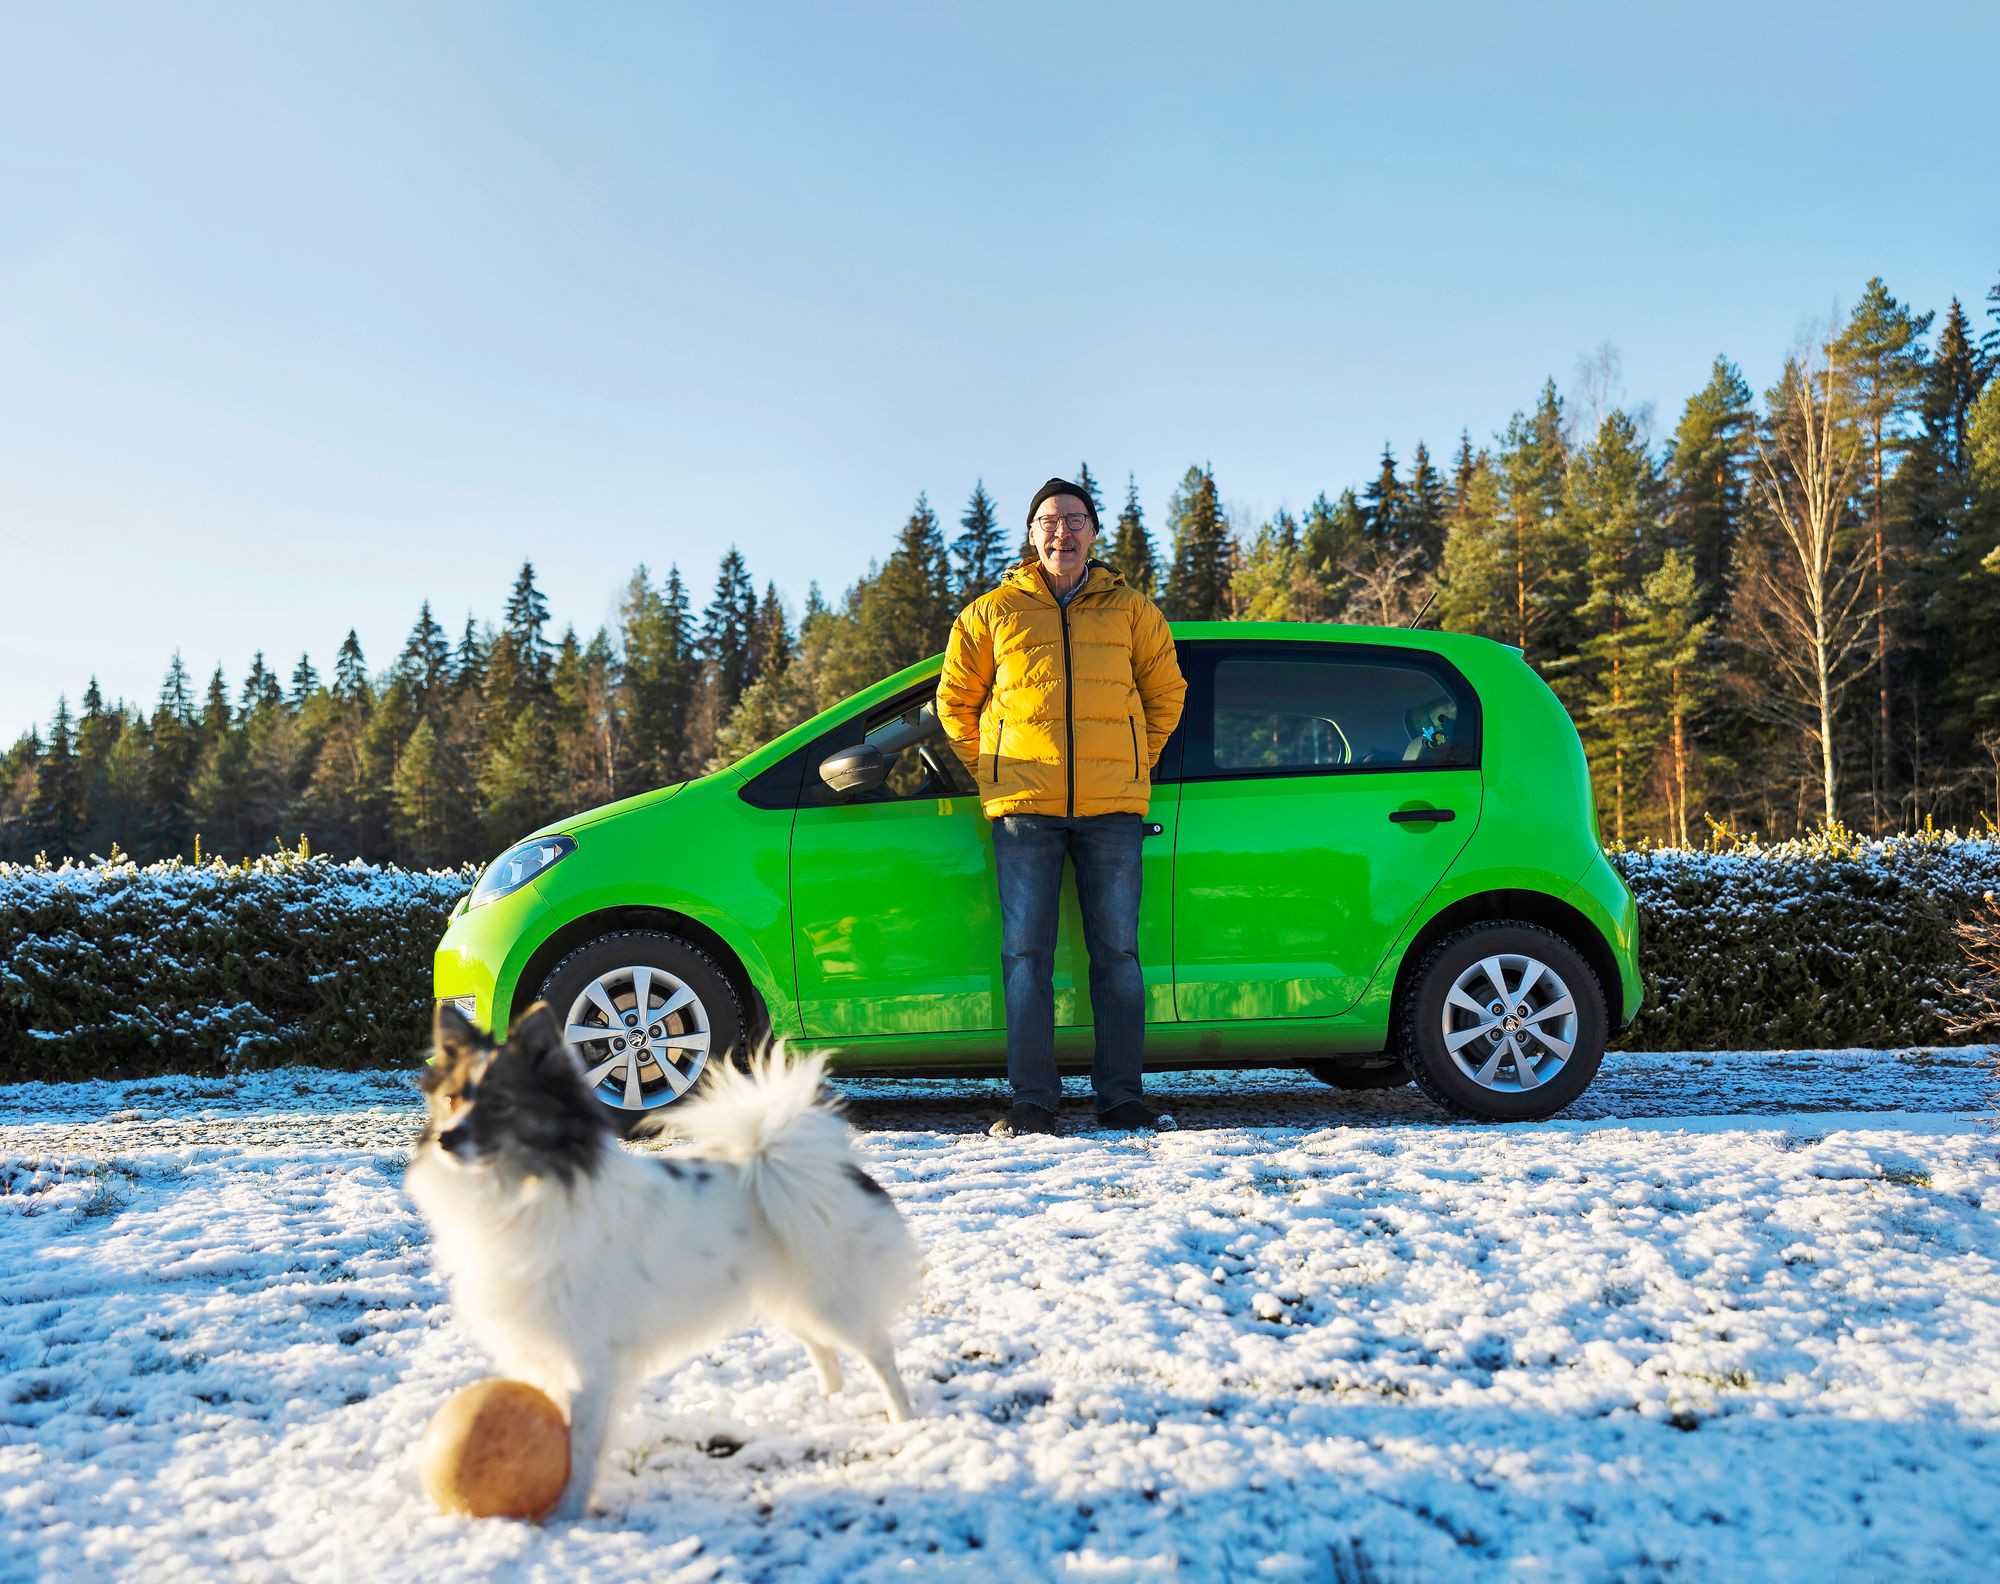 Sähköauto on äänetön, joten Mönkkösillä haukkuherkkä koira on ollut hyvä haukkuvahti varoittamaan muita lähestyvästä autosta. © Matias